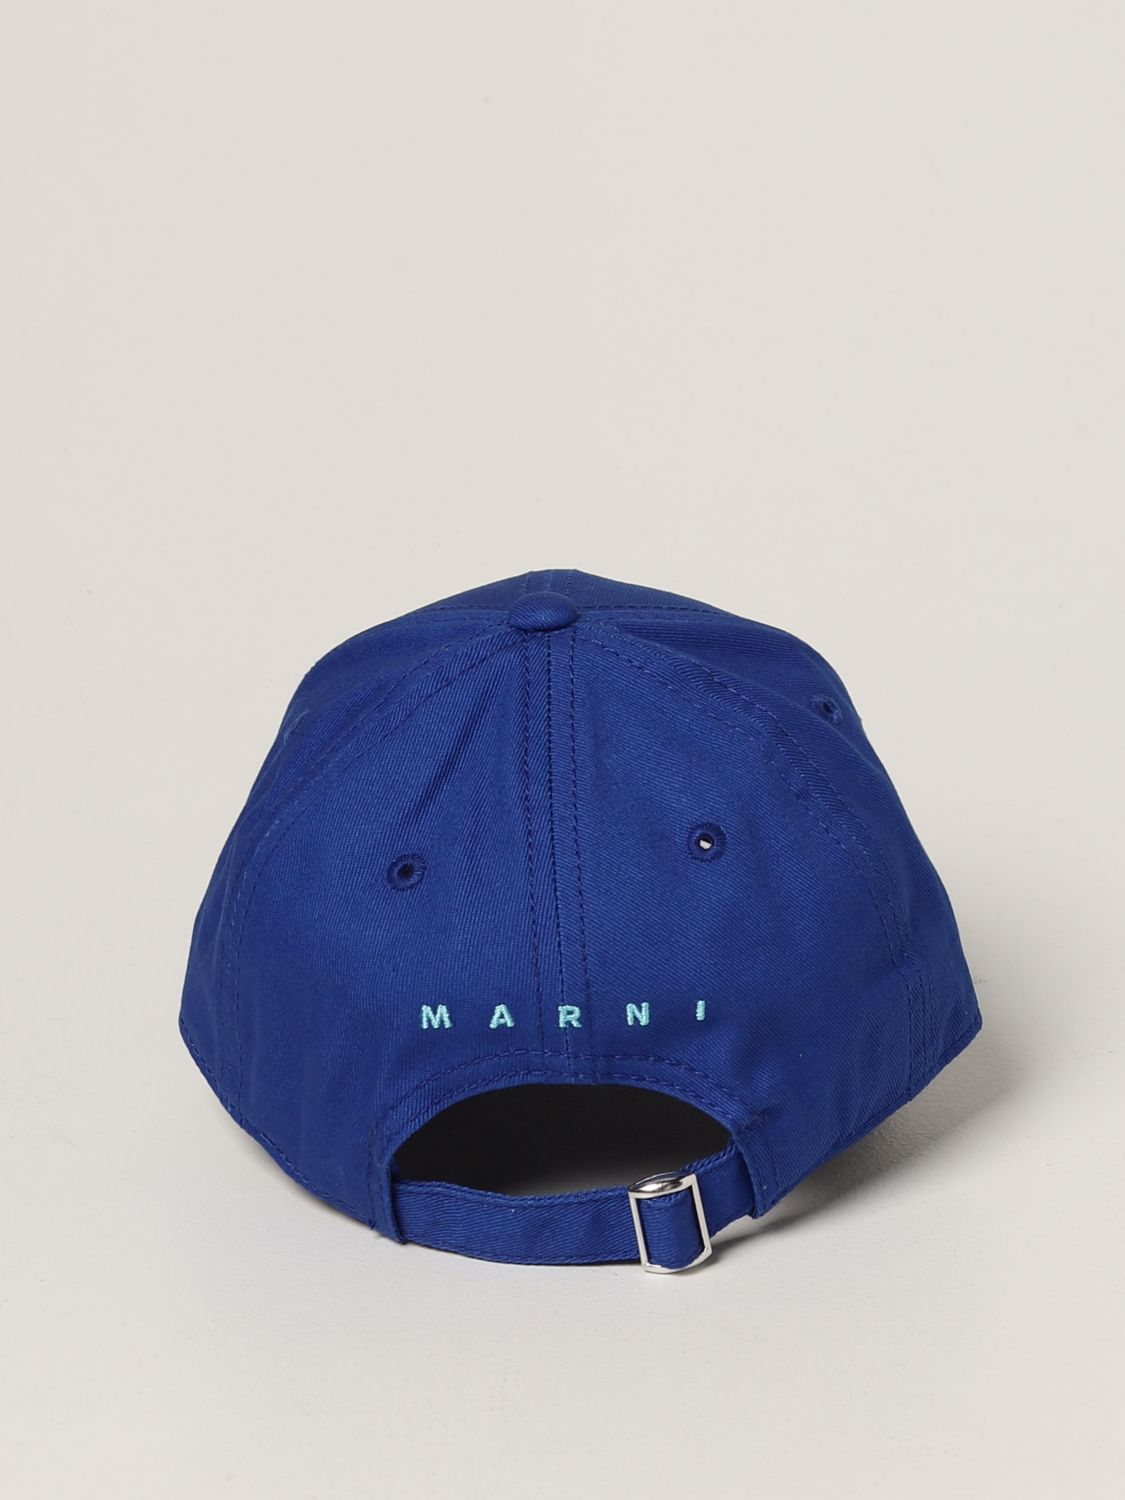 マルニ キャップ 帽子